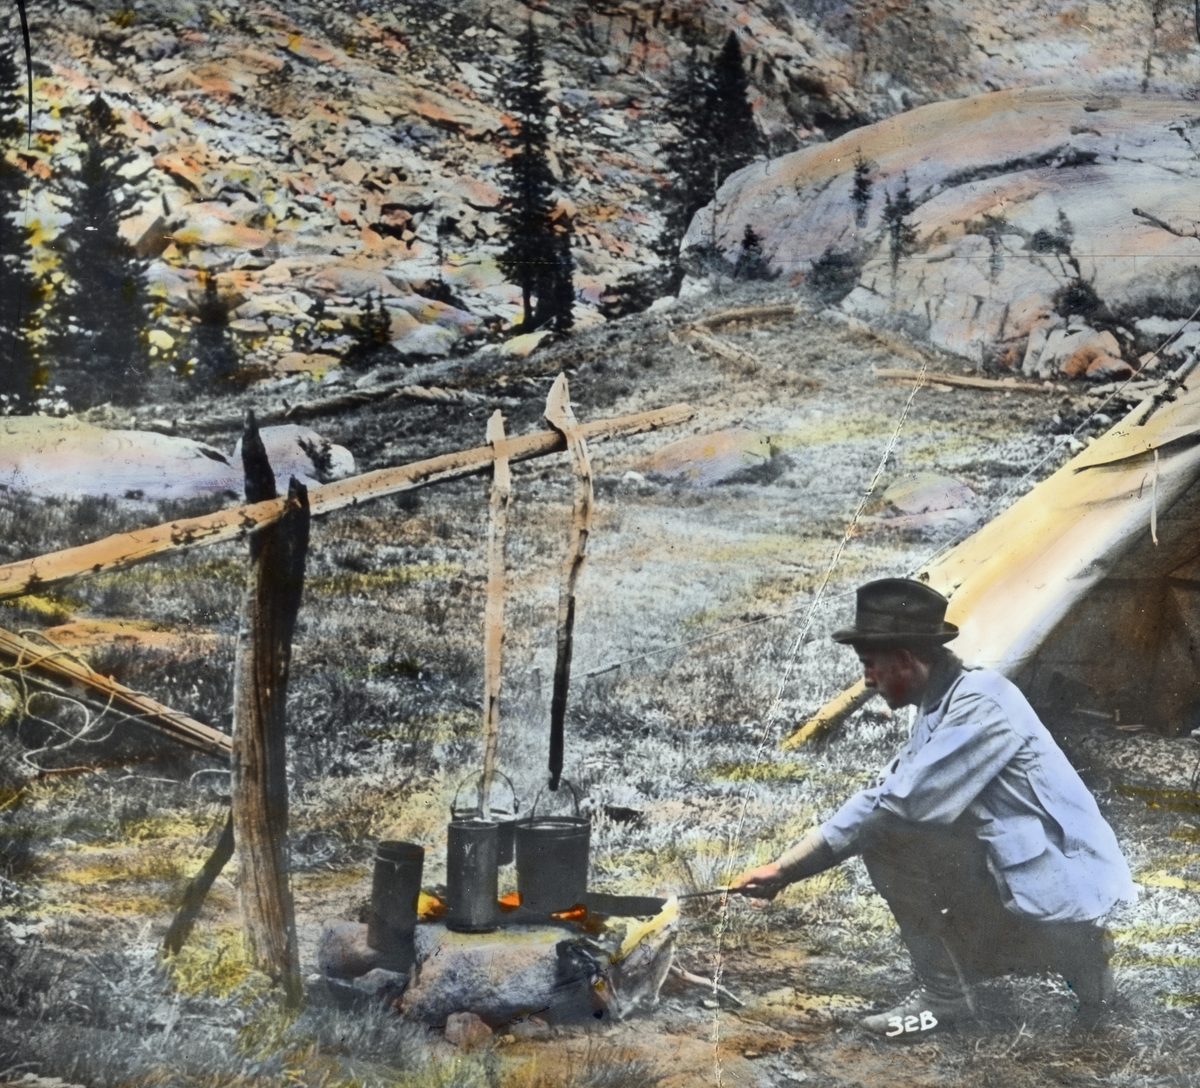 Håndkolorert dias. En mann passer bålet, der to kjeler koker. Bak skimtes delene av et telt og et steinete fjellandskap. I boken "En emigrants ungdomserindringer" forteller fotografen Anders Beer Wilse om sitt arbeid i U.S.A.  